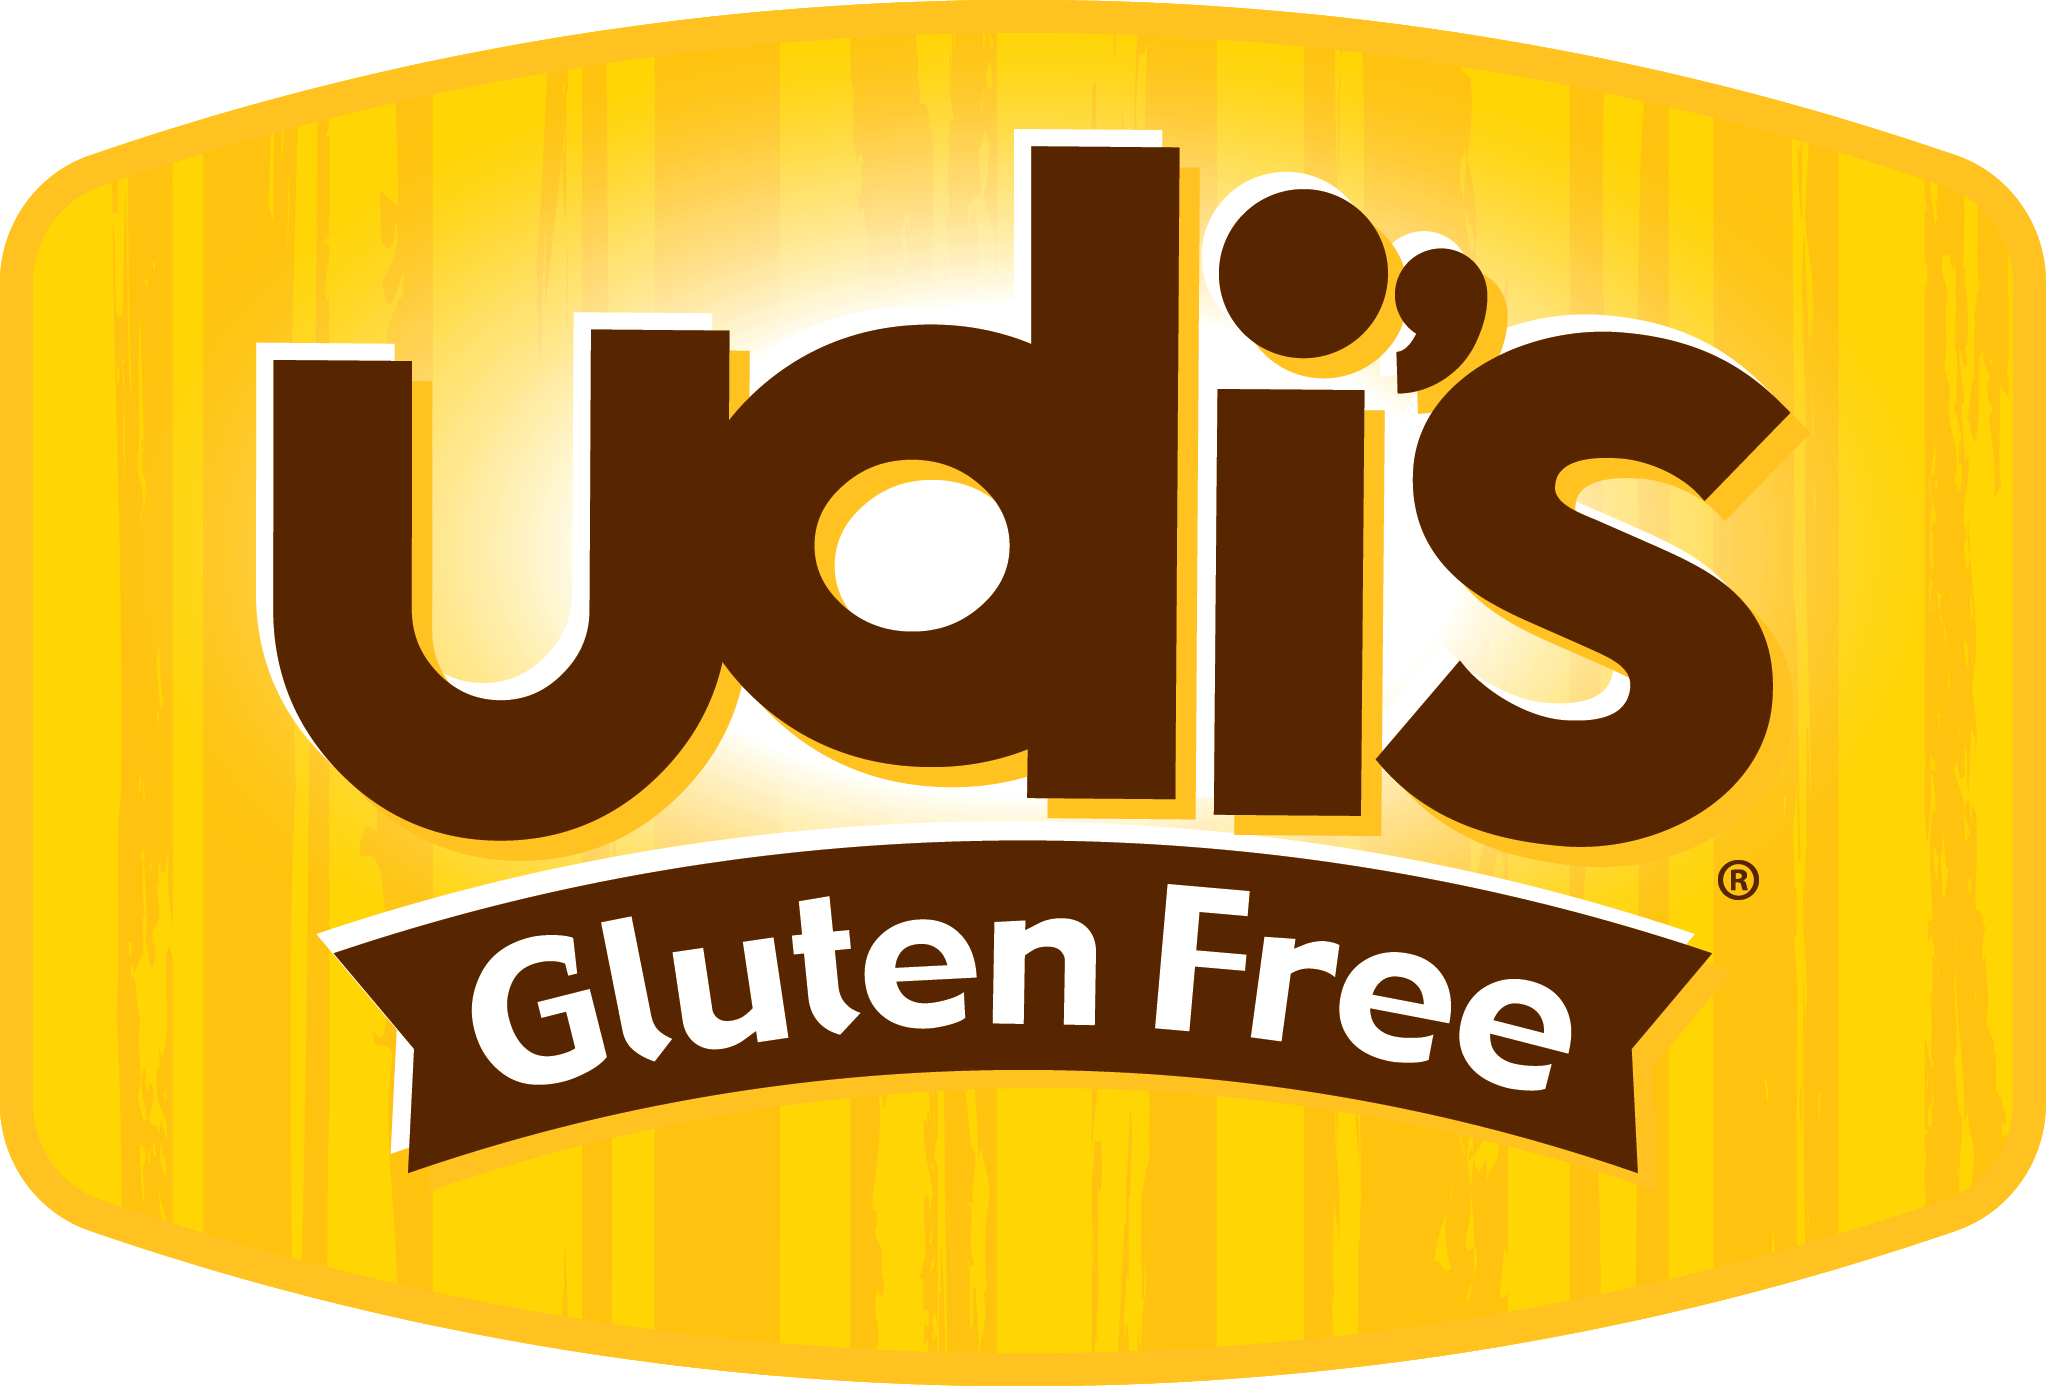 Udi's Logo - Udi's Gluten Free. Gluten Free By